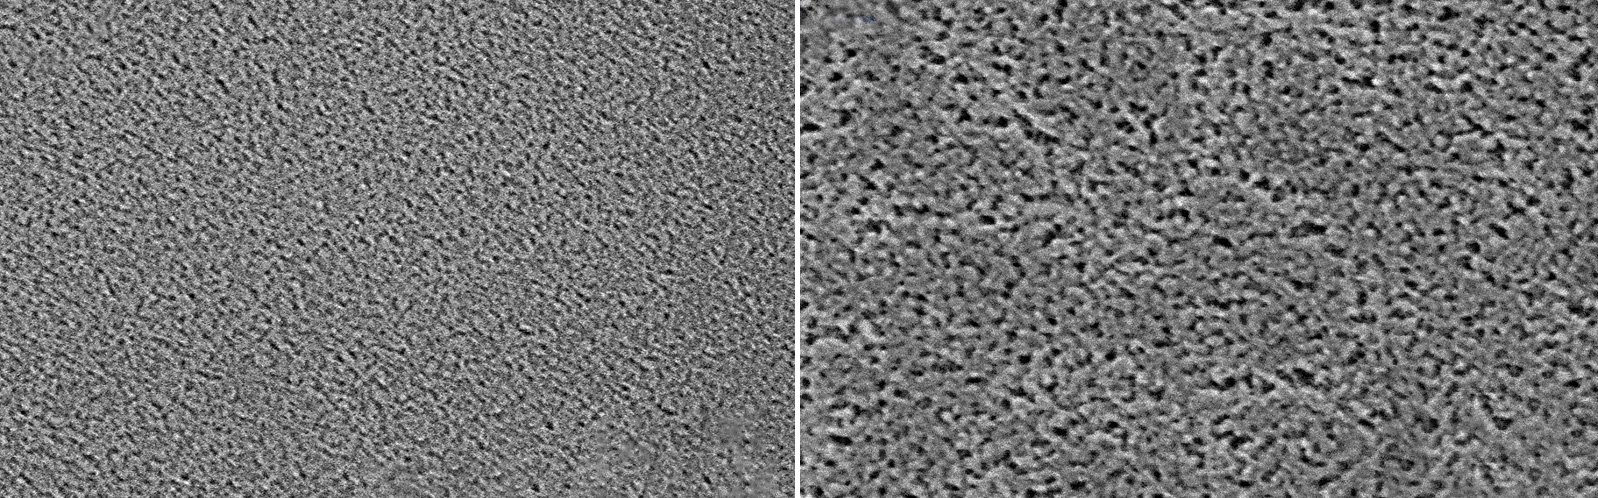 REM-Bilder von durch ALD hergestelltem nanoporösem SiO2.